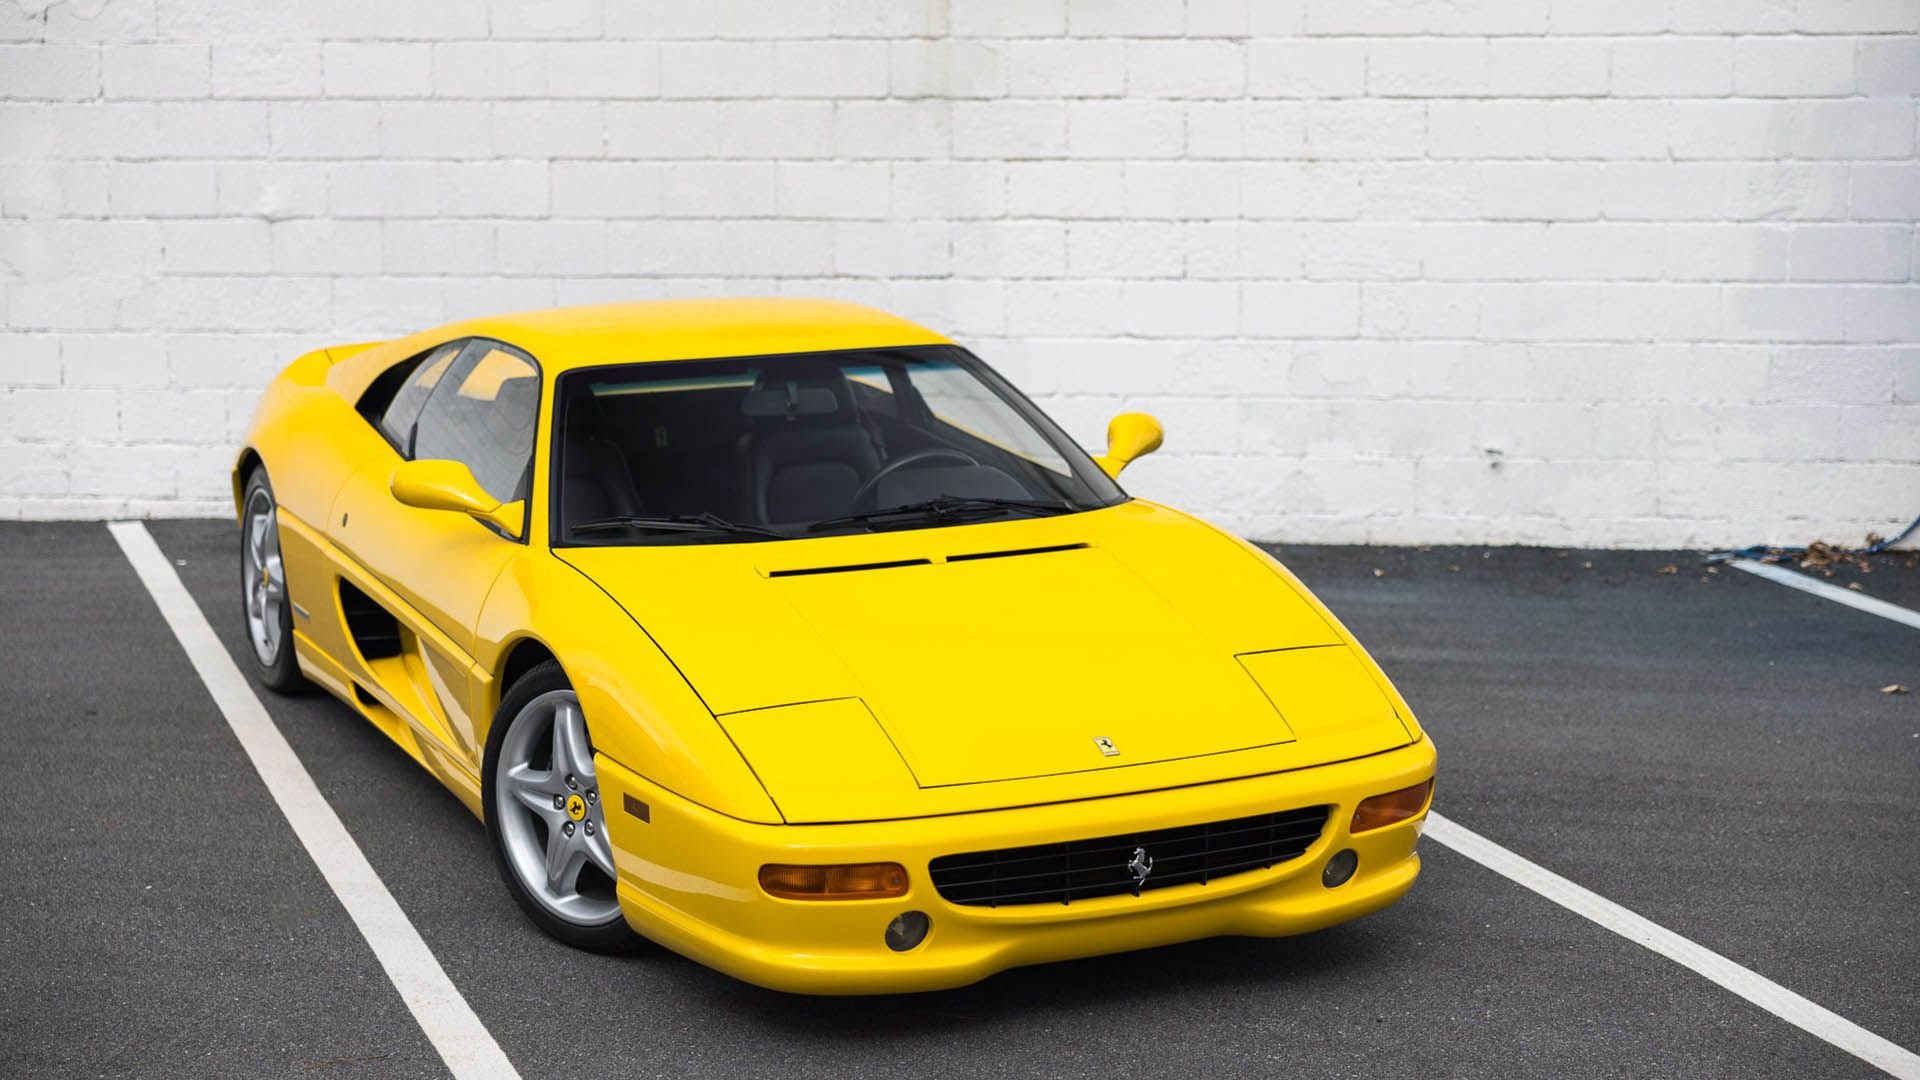 For Sale 1995 Ferrari F355 Berlinetta